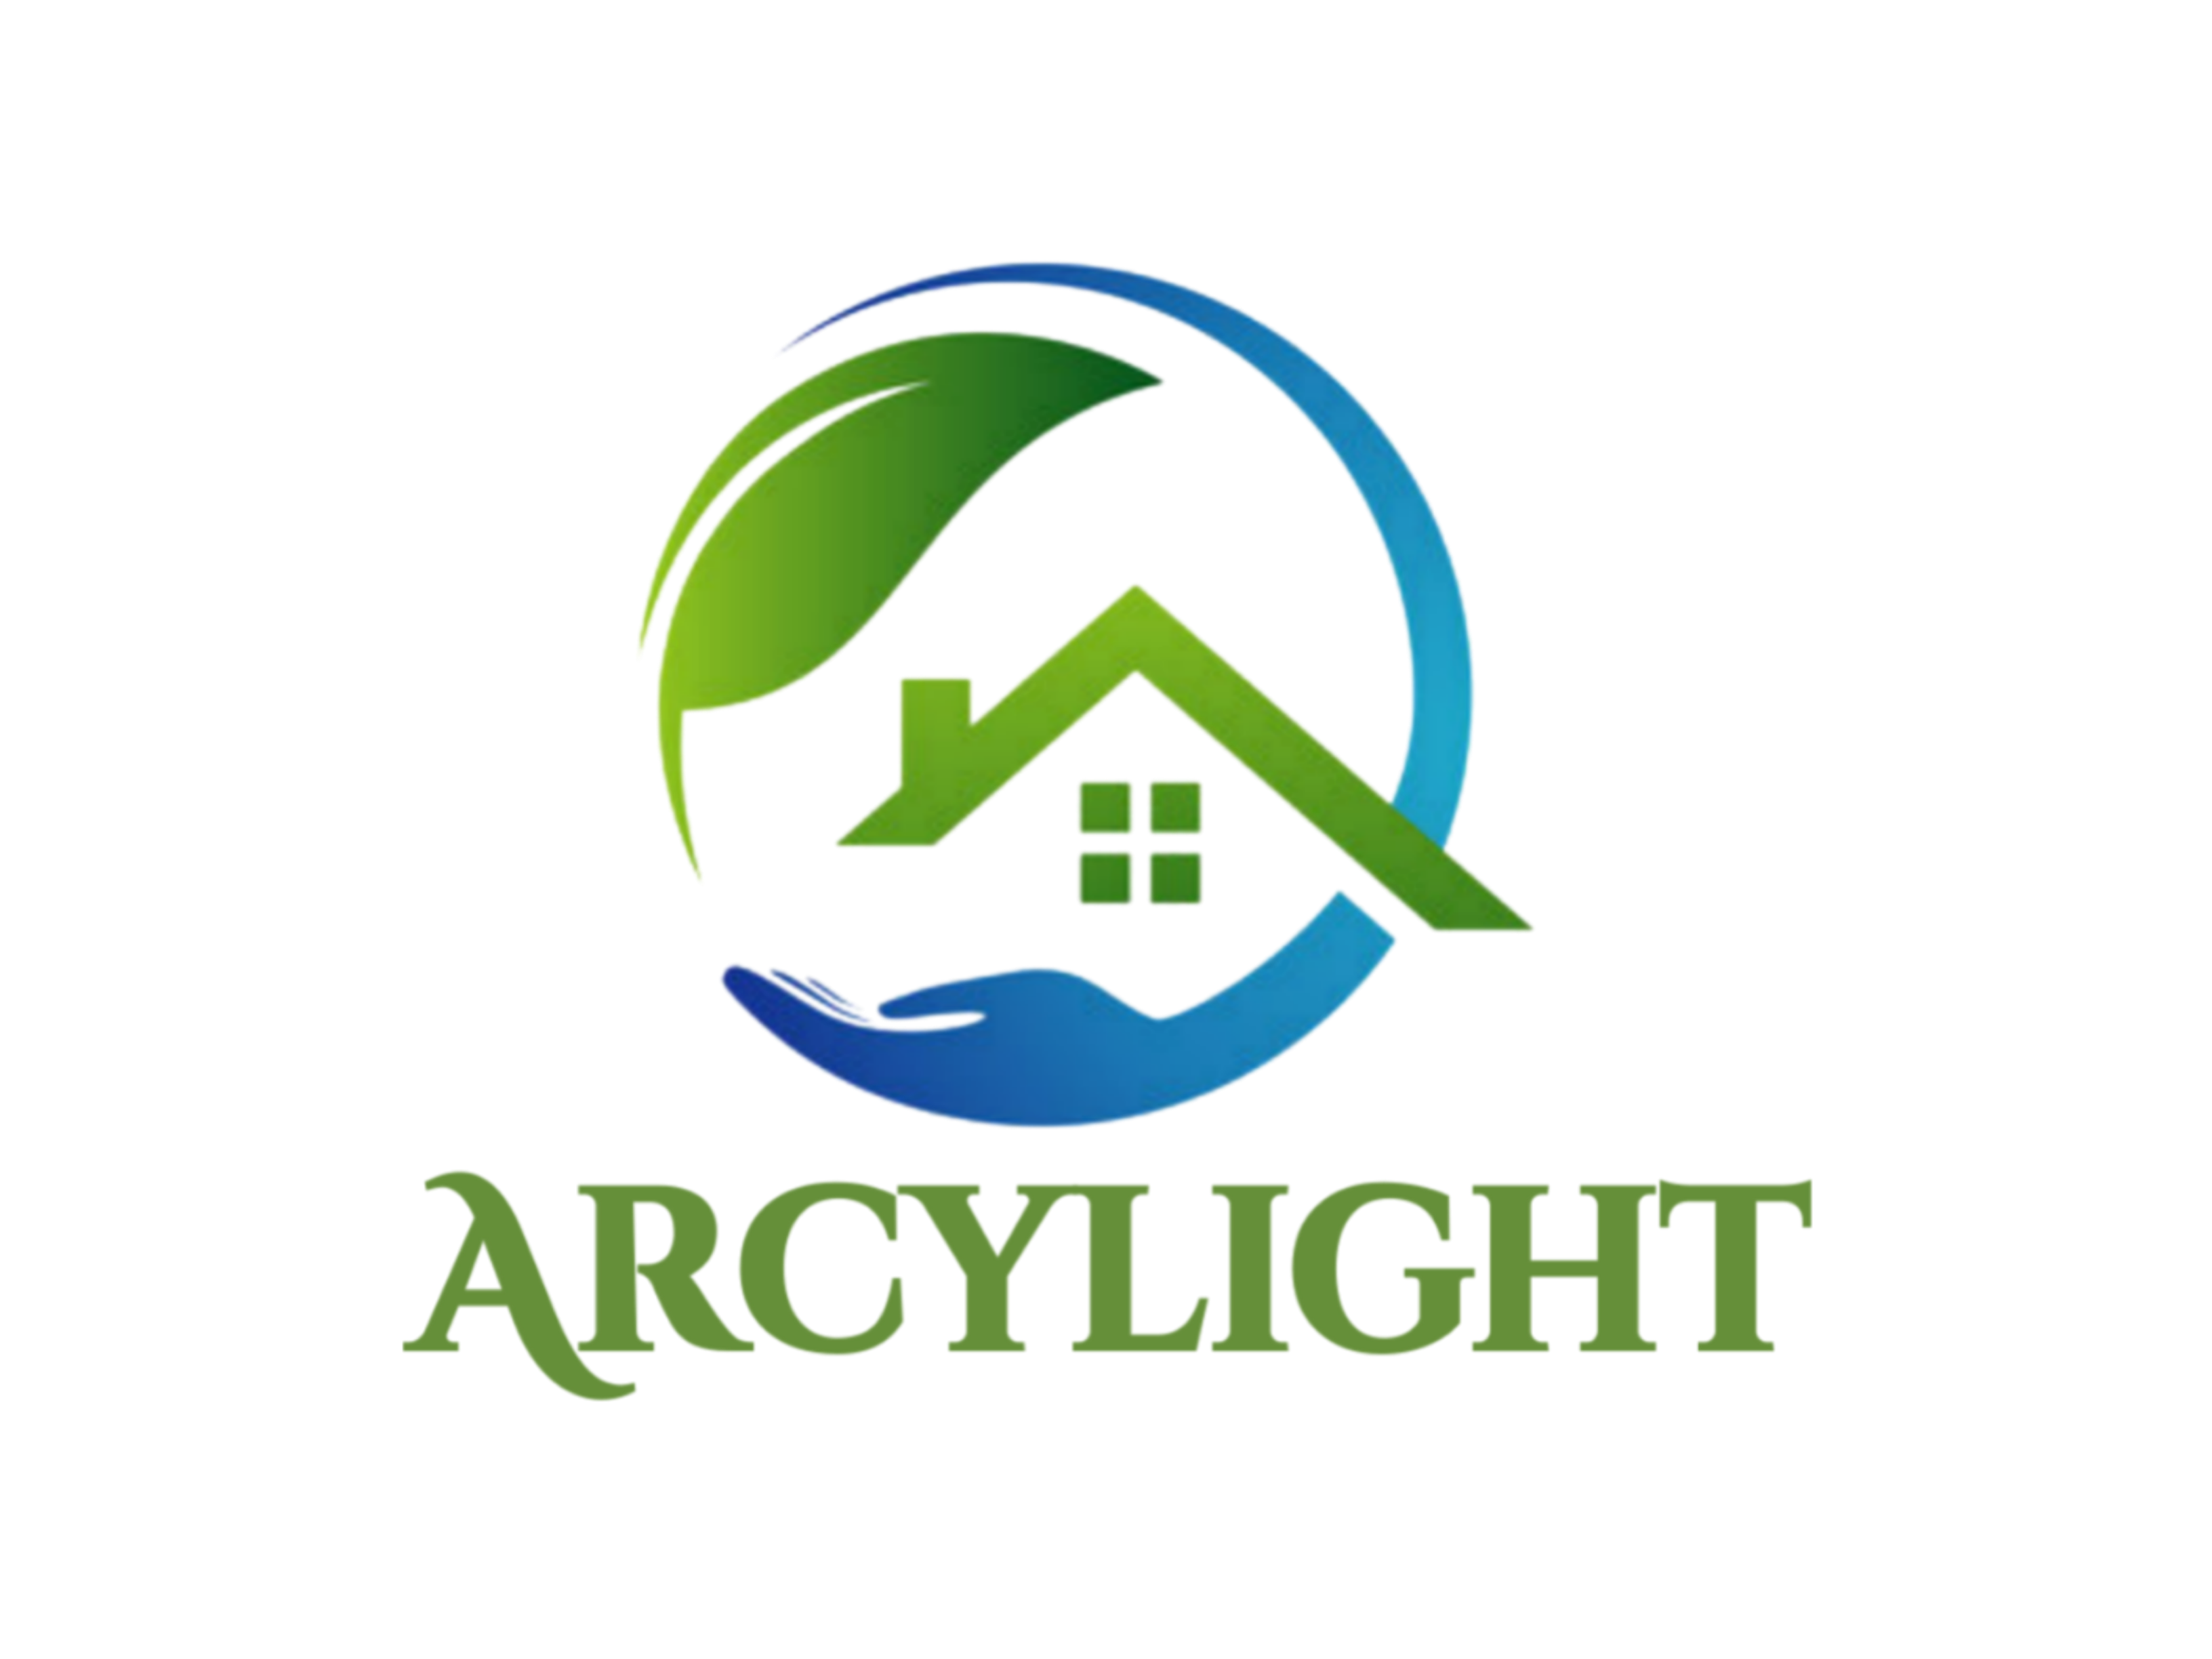 www.arcylight.com